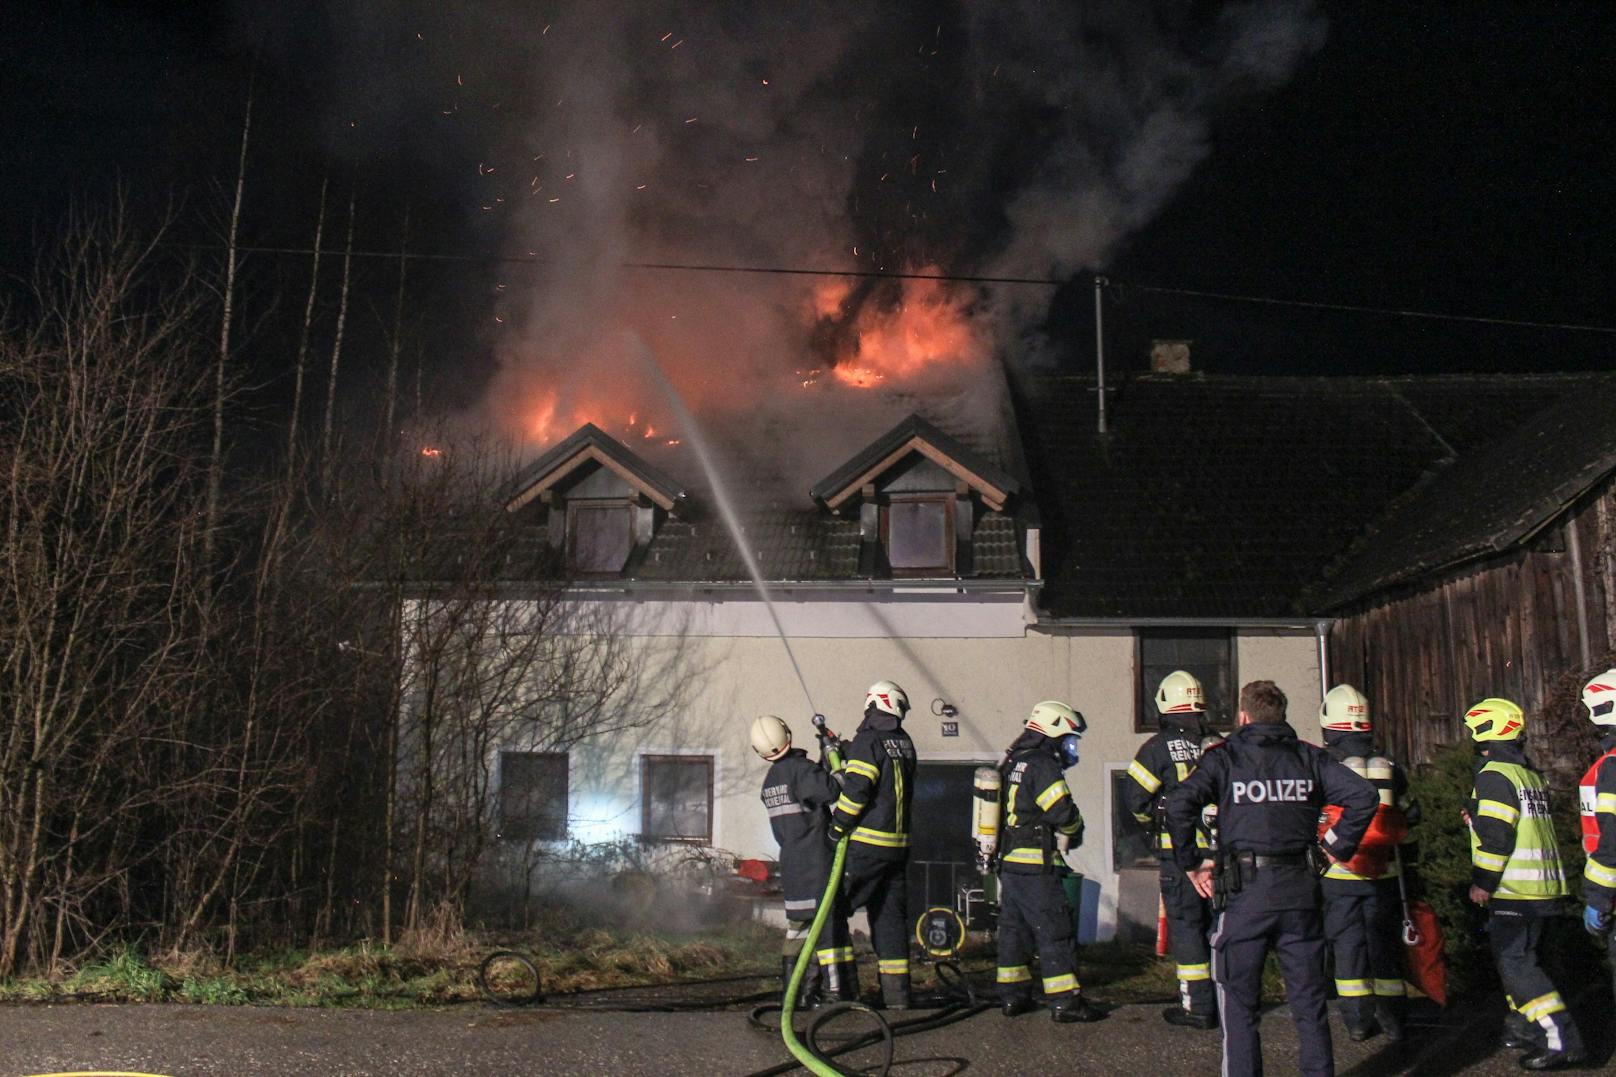 Die Feuerwehr wurde um ca. 02:15 zu einem Brand eines Einfamilienhauses in Stiftung bei Reichenthal alarmiert. Beim Eintreffen der Einsatzkräfte schlugen die Flammen bereits aus dem Dach des Gebäudes.